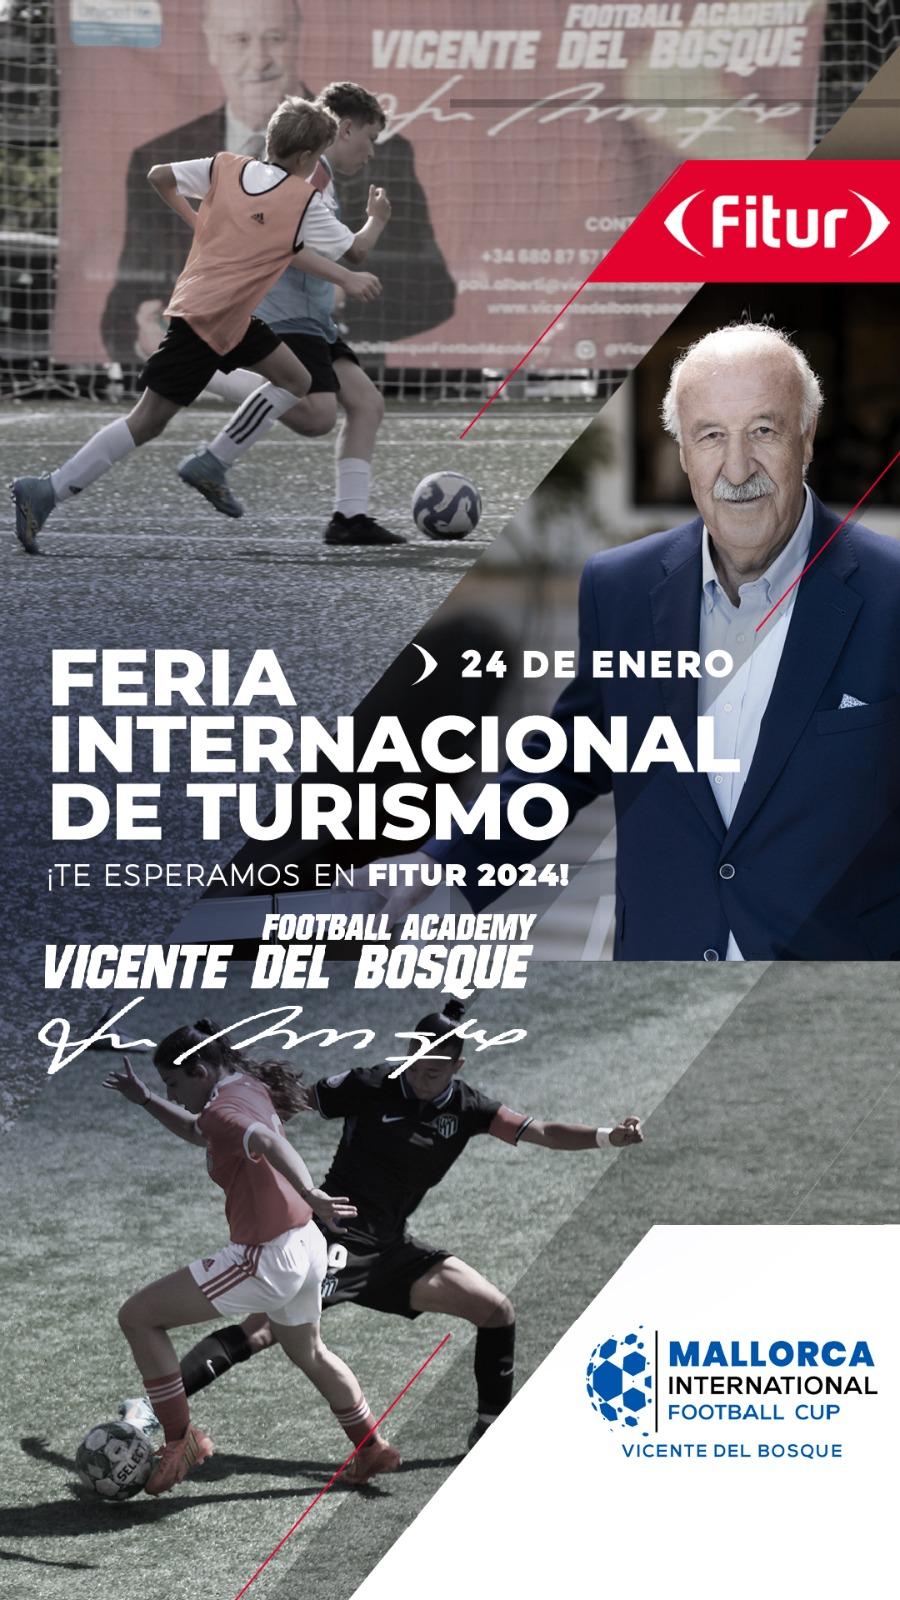 Vicente Del Bosque to attend Fitur to present his events in Mallorca